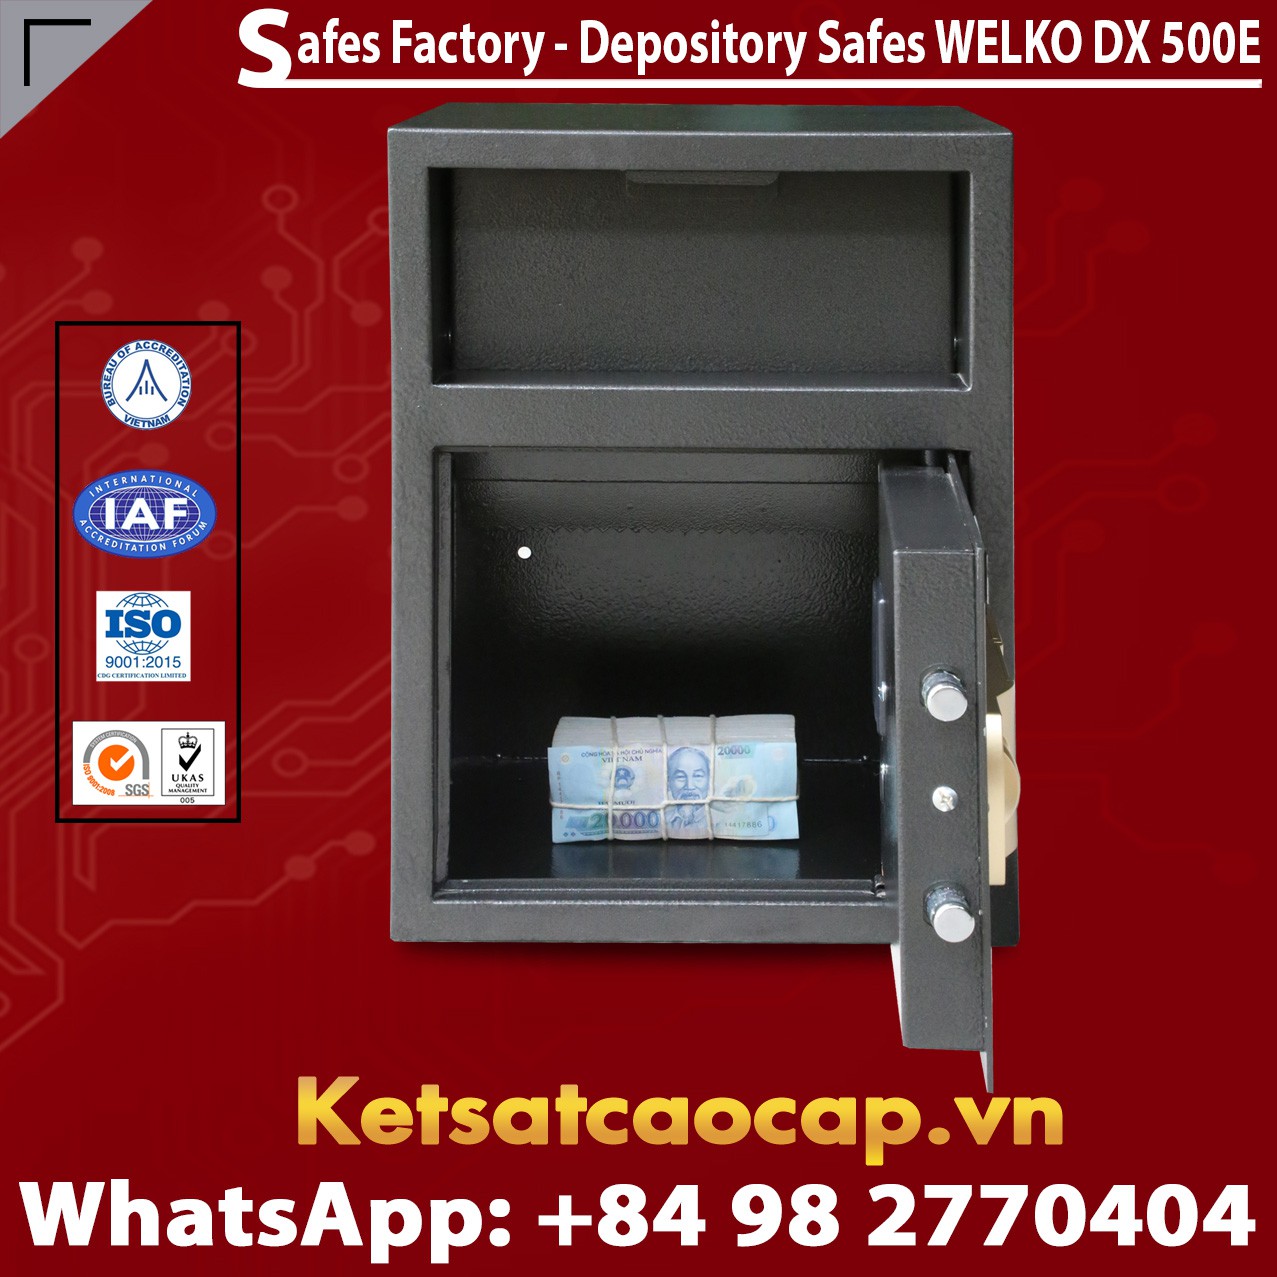 Hướng dẫn sử dụng Office Safes Box High Quality Factory Price xuất khẩu an toàn hiện nay